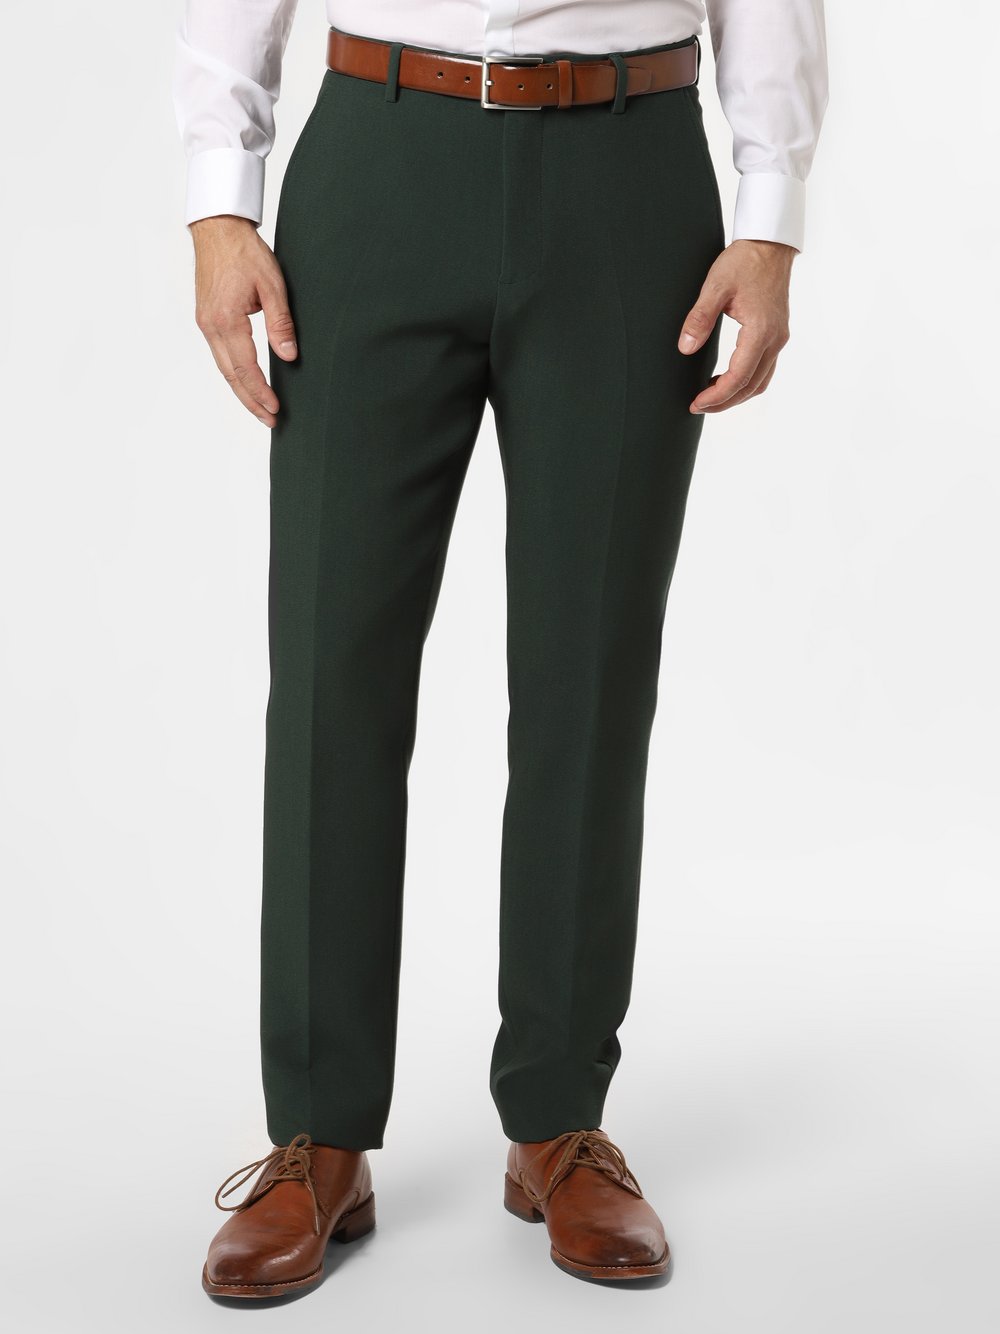 Finshley & Harding London - Męskie spodnie od garnituru modułowego – Grant, zielony